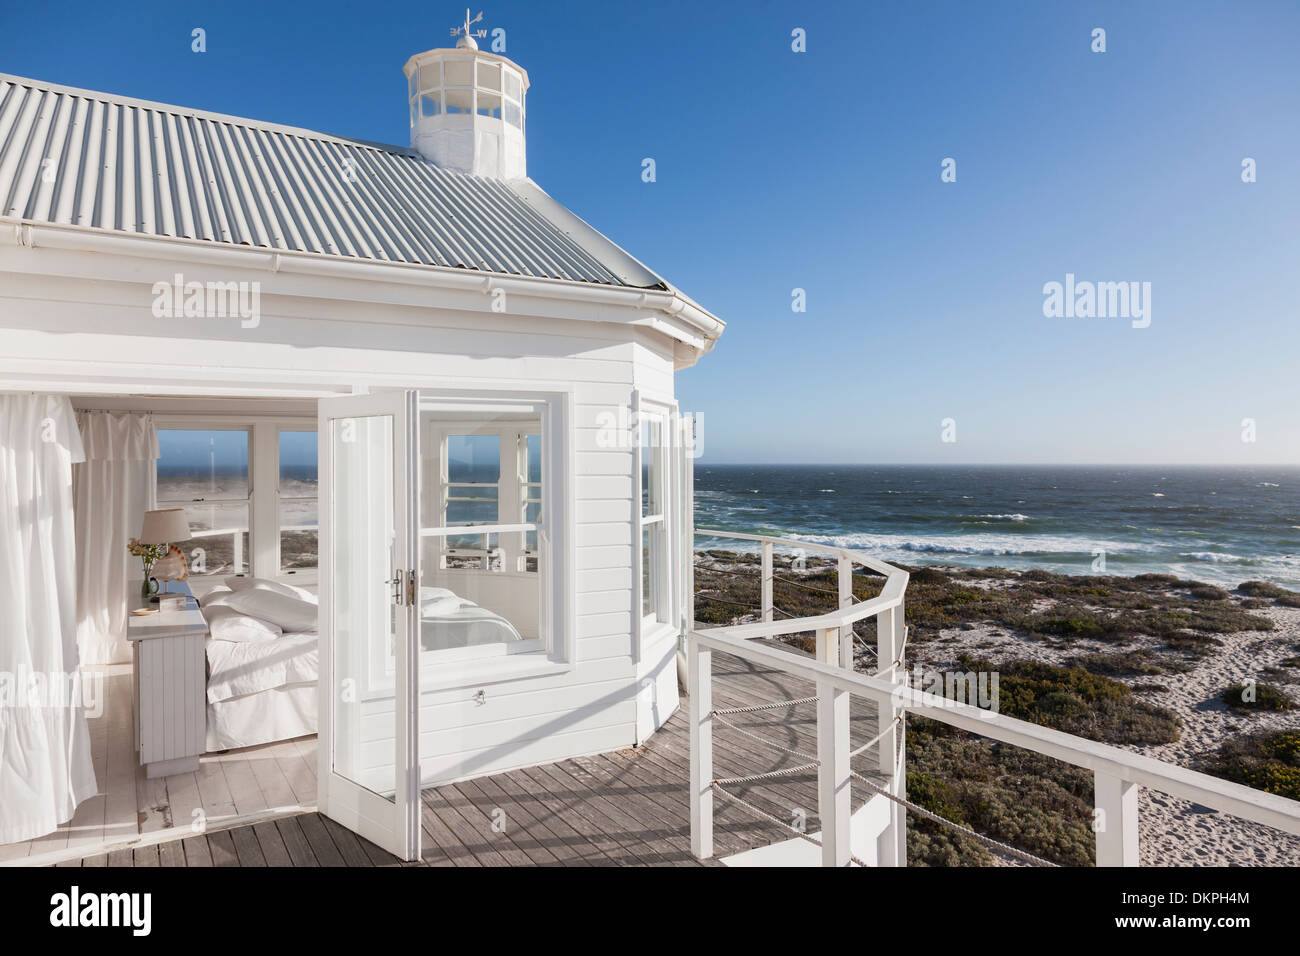 Weiße Schlafzimmer mit Blick auf Meer Stockfoto